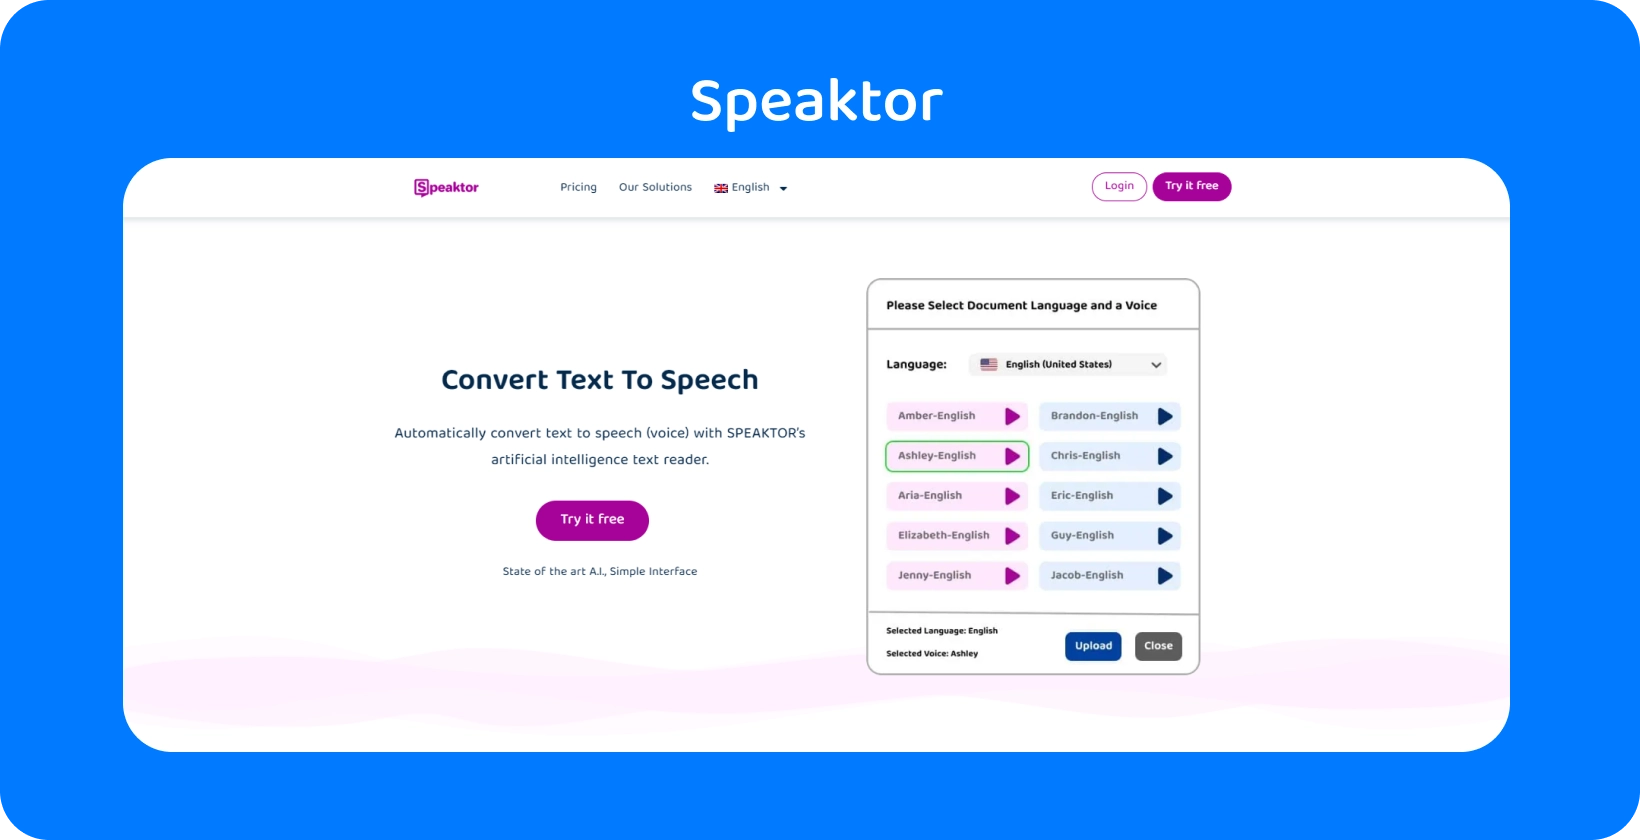 Speaktor tilbyr et brukervennlig grensesnitt for tekst-til-tale-konvertering.